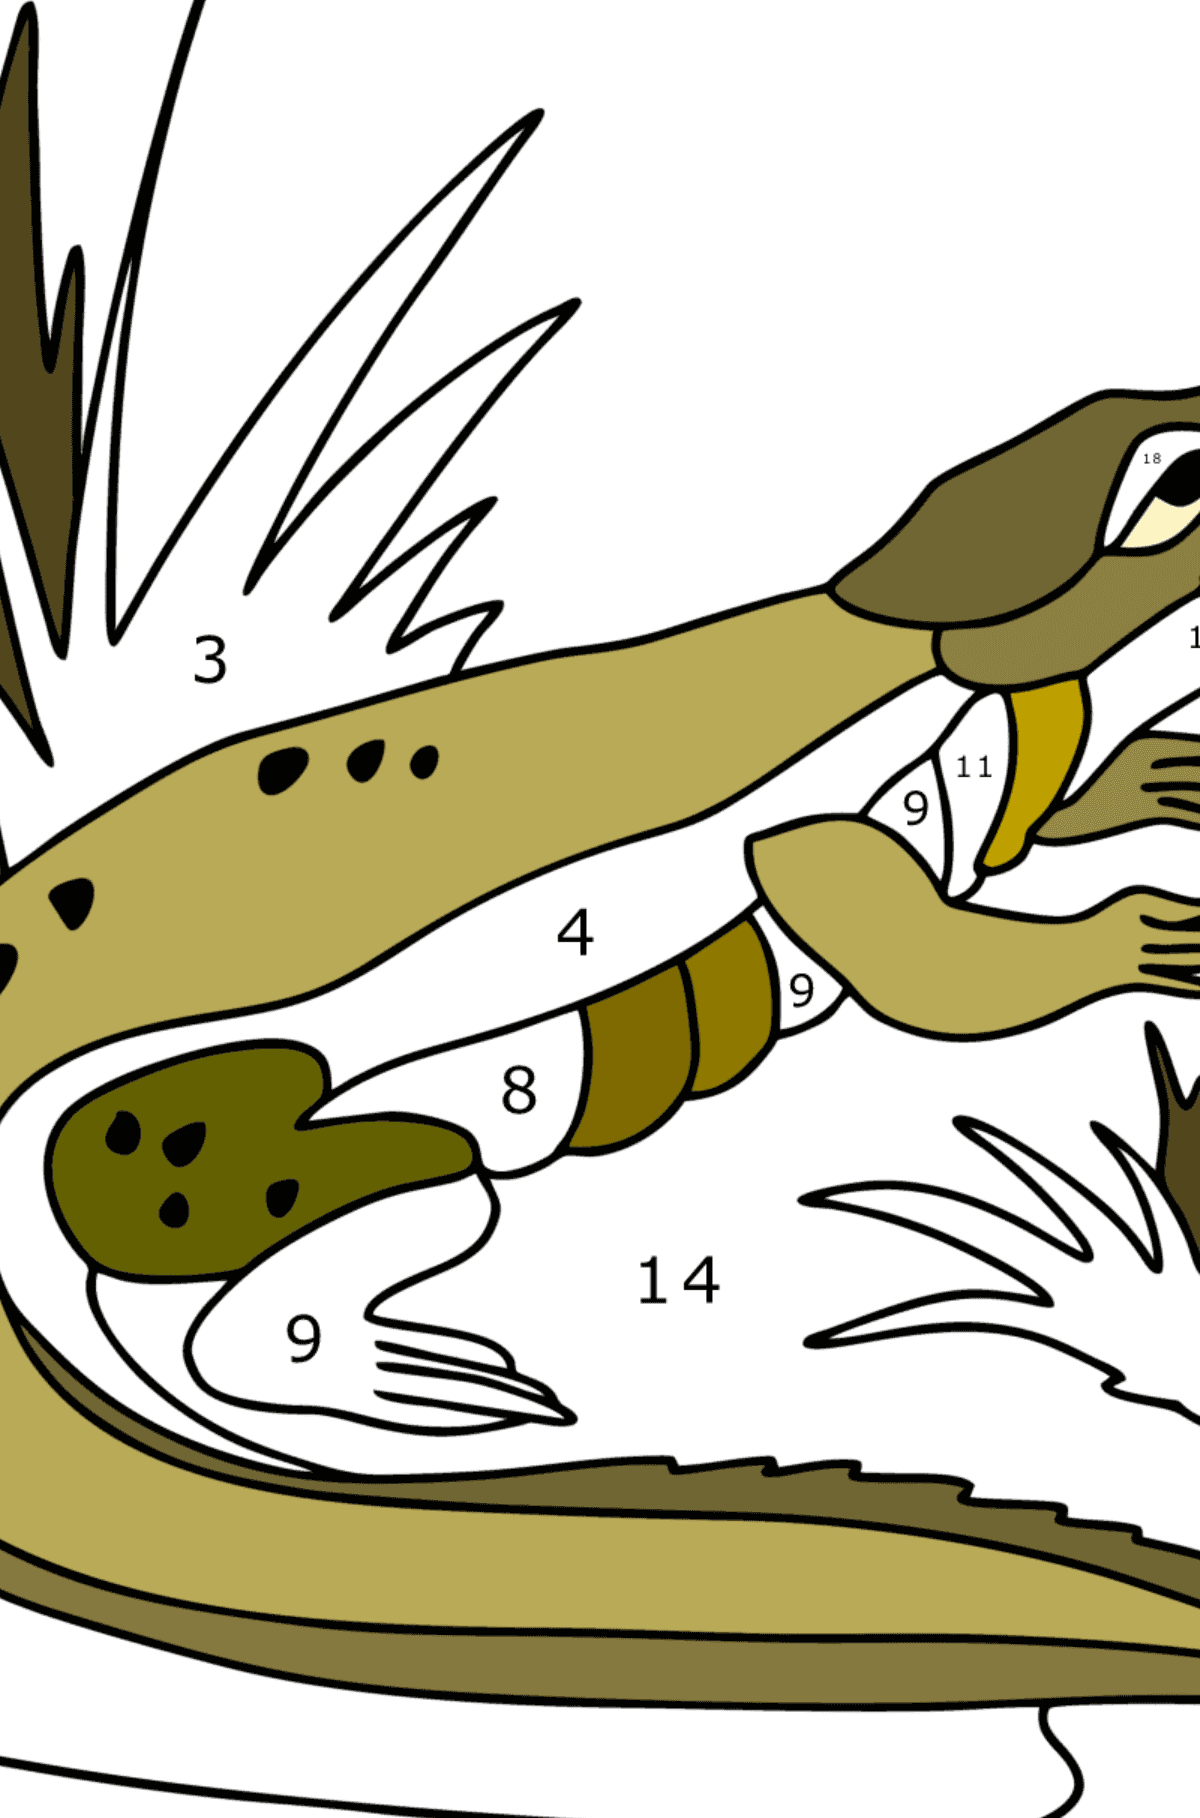 Krokodil-Dschungel ausmalbild - Malen nach Zahlen für Kinder